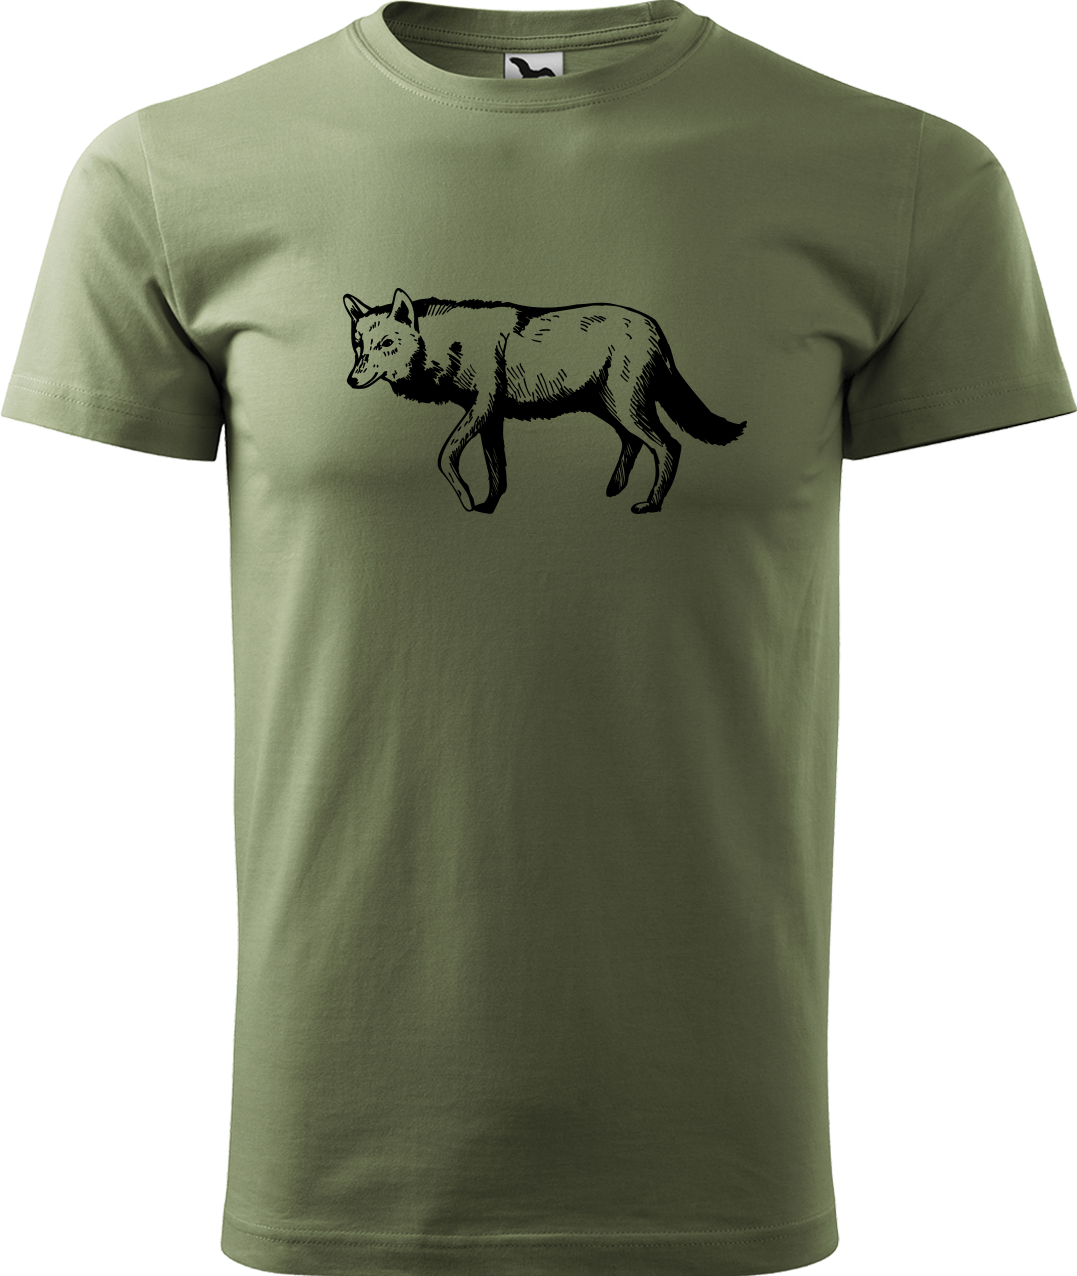 Pánské tričko s vlkem - Vlk Velikost: L, Barva: Světlá khaki (28), Střih: pánský